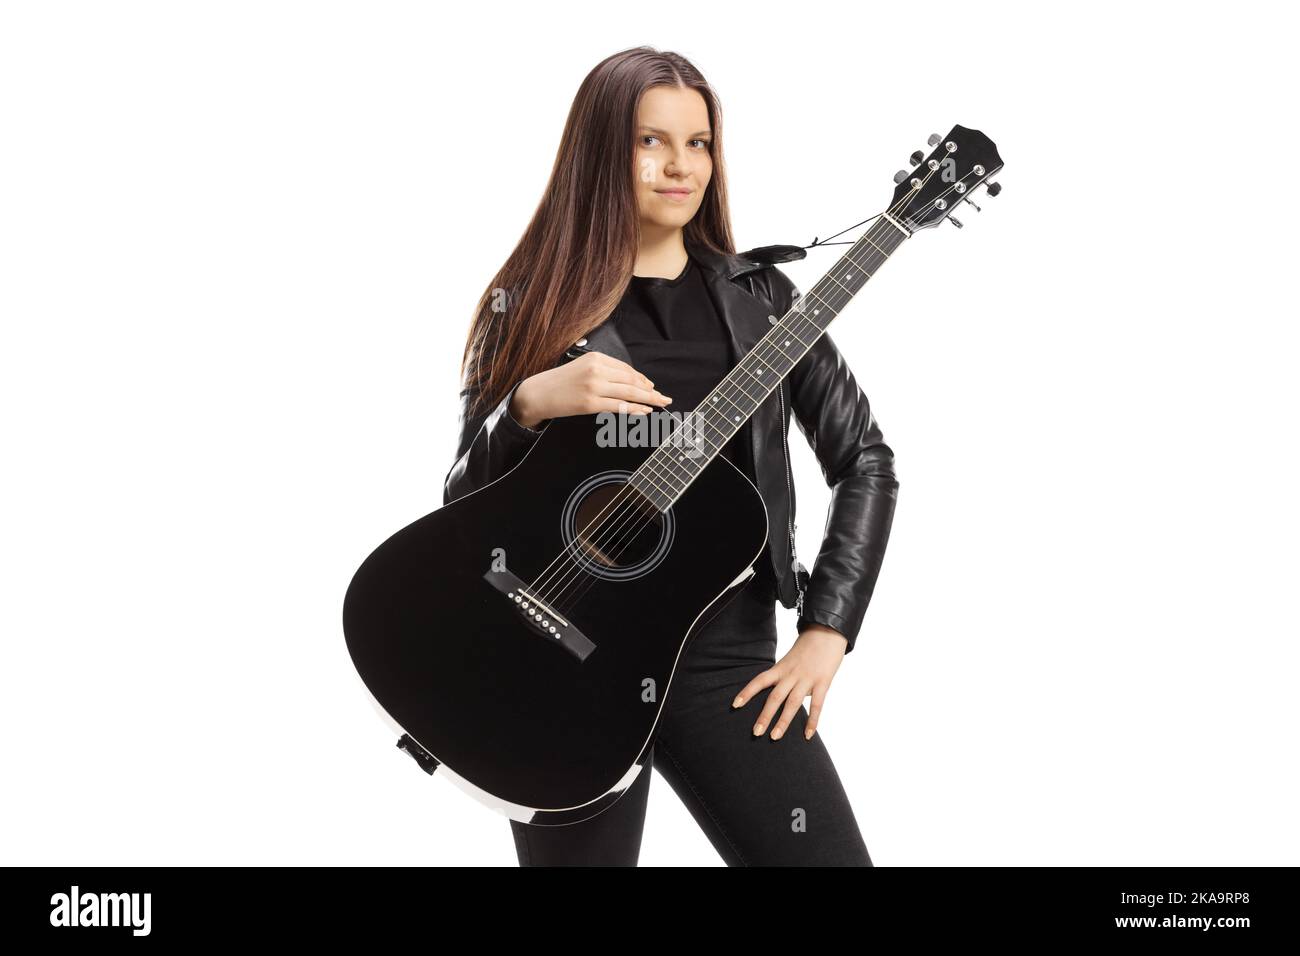 Musicista femminile con una chitarra acustica che posa isolata su sfondo bianco Foto Stock